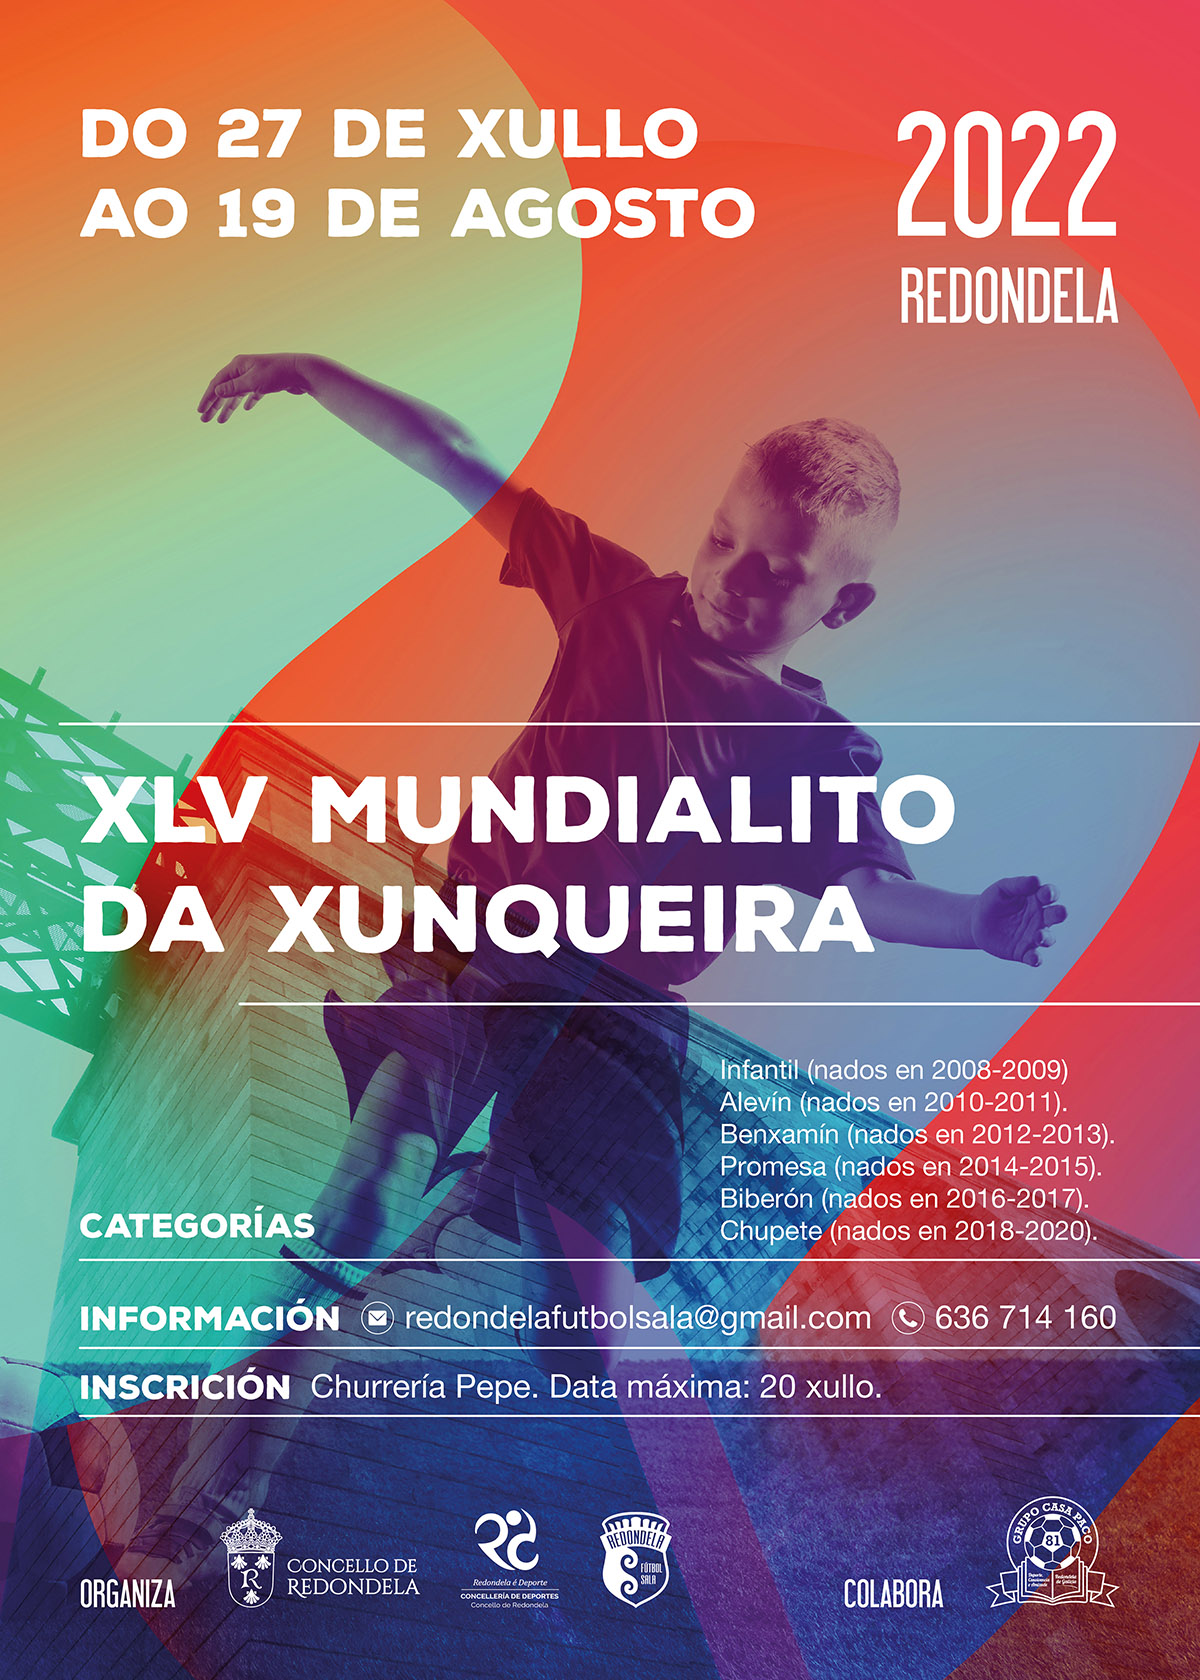 Campaña deporte futbol Redondela Pontevedra Diseño Publicidad Marketing Evento cartel